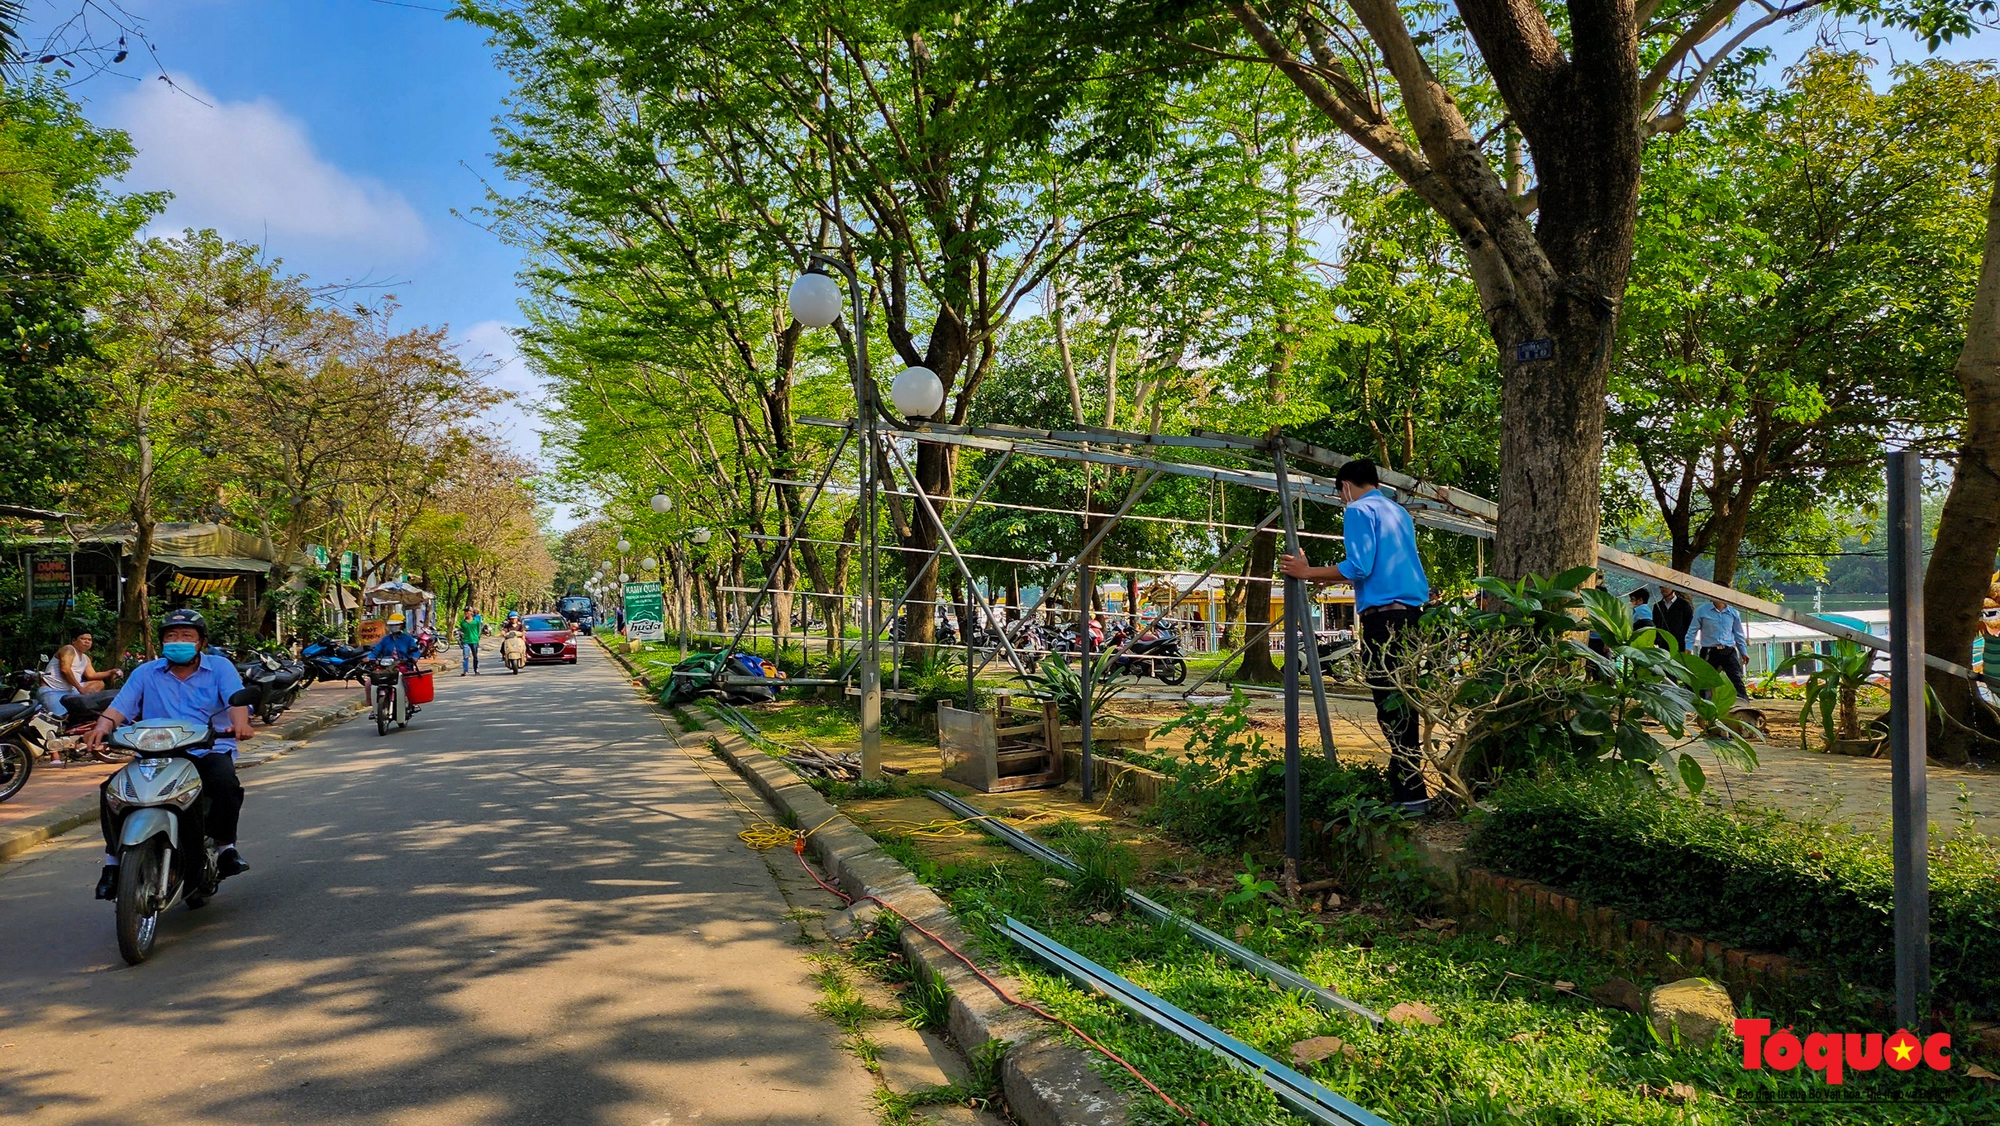 Mạnh tay xử lý hàng quán lấn chiếm trái phép, trả lại không gian cho công viên Trịnh Công Sơn - Ảnh 5.